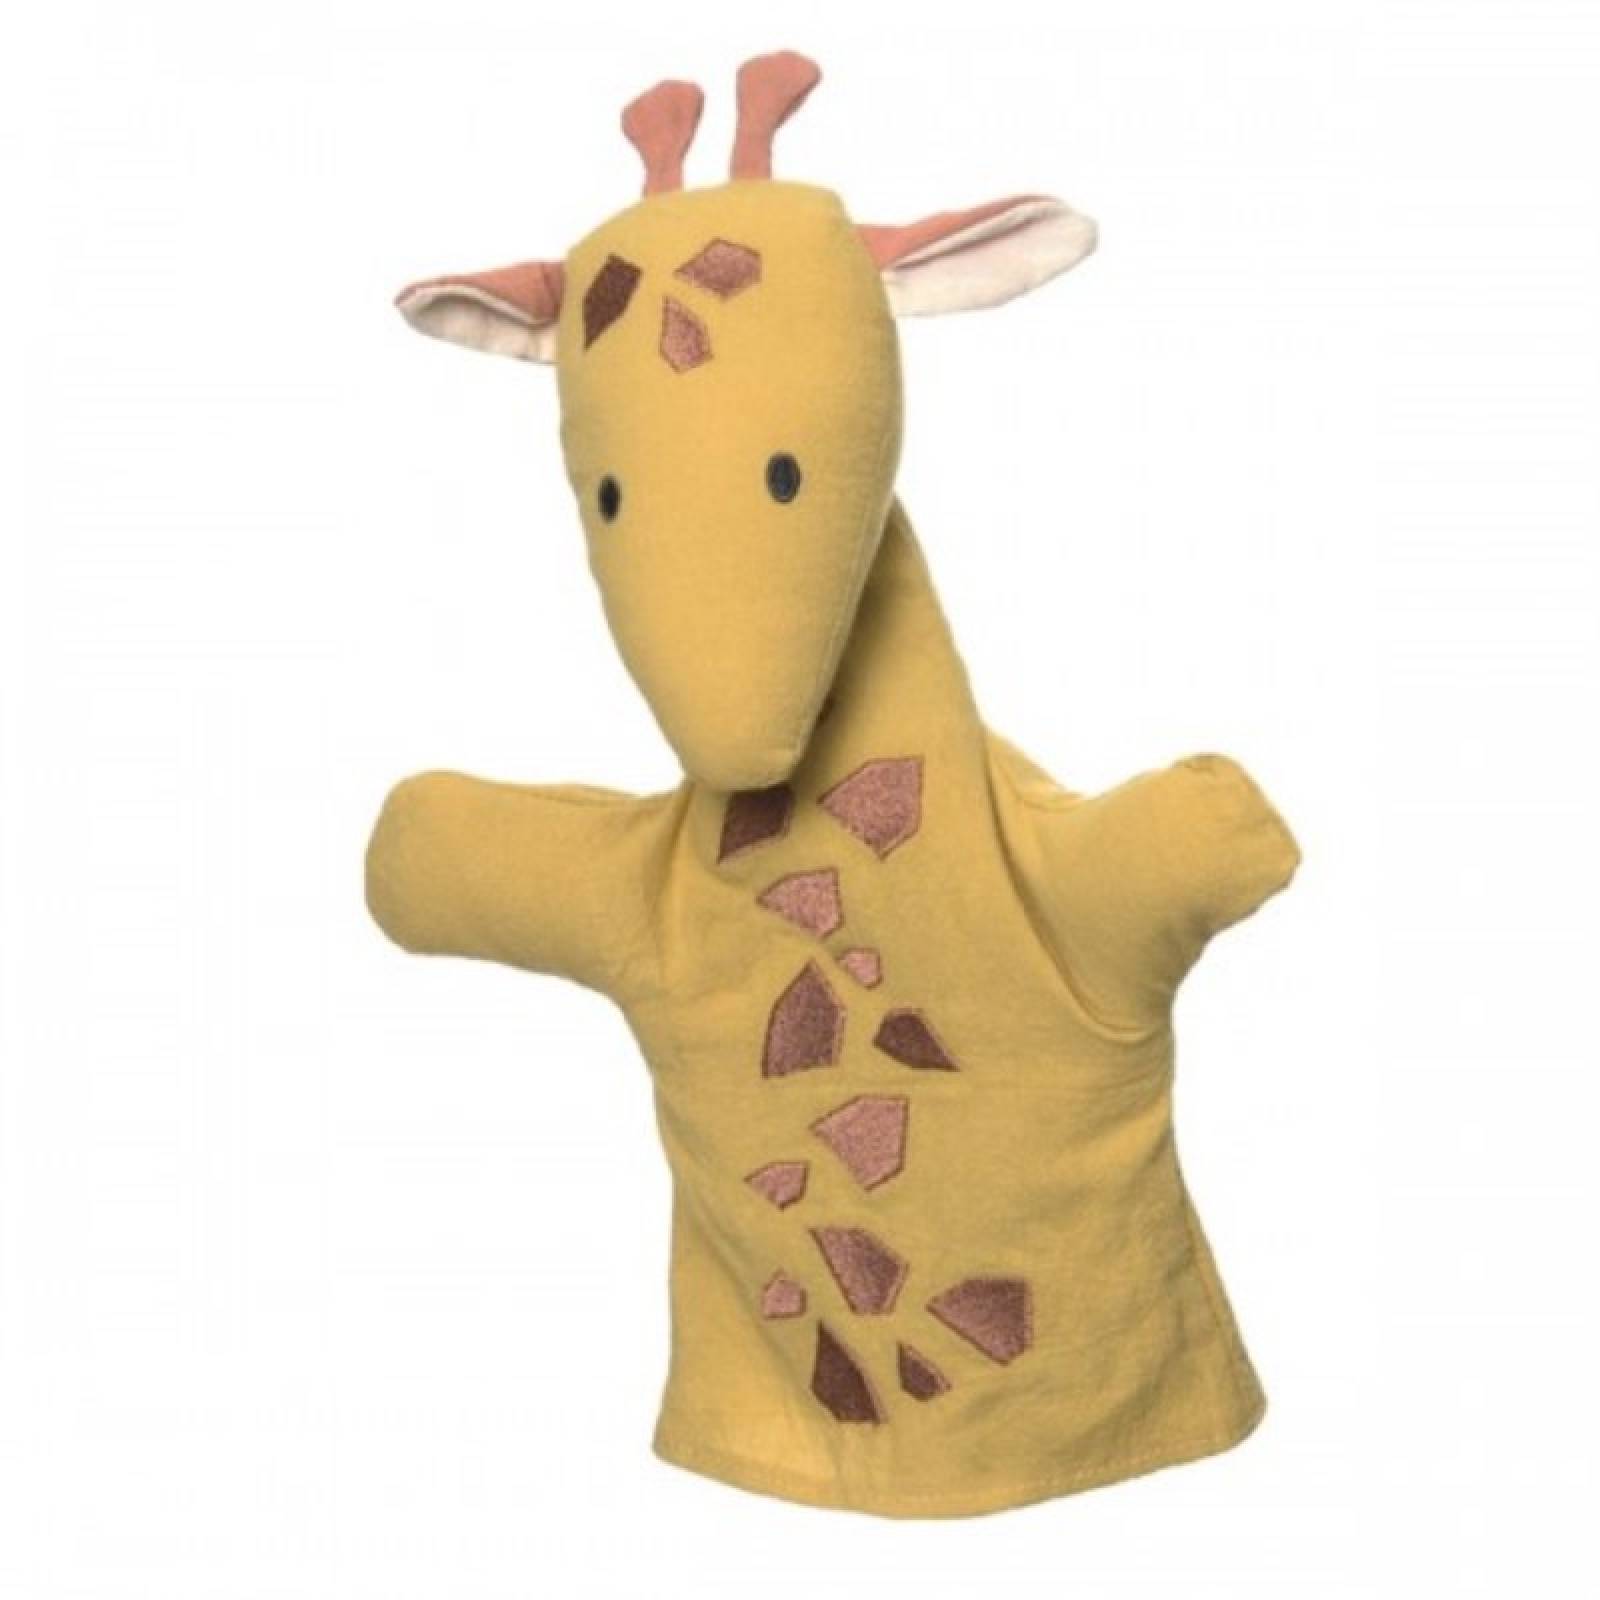 Giraffe - Small Cotton Handpuppet 0+